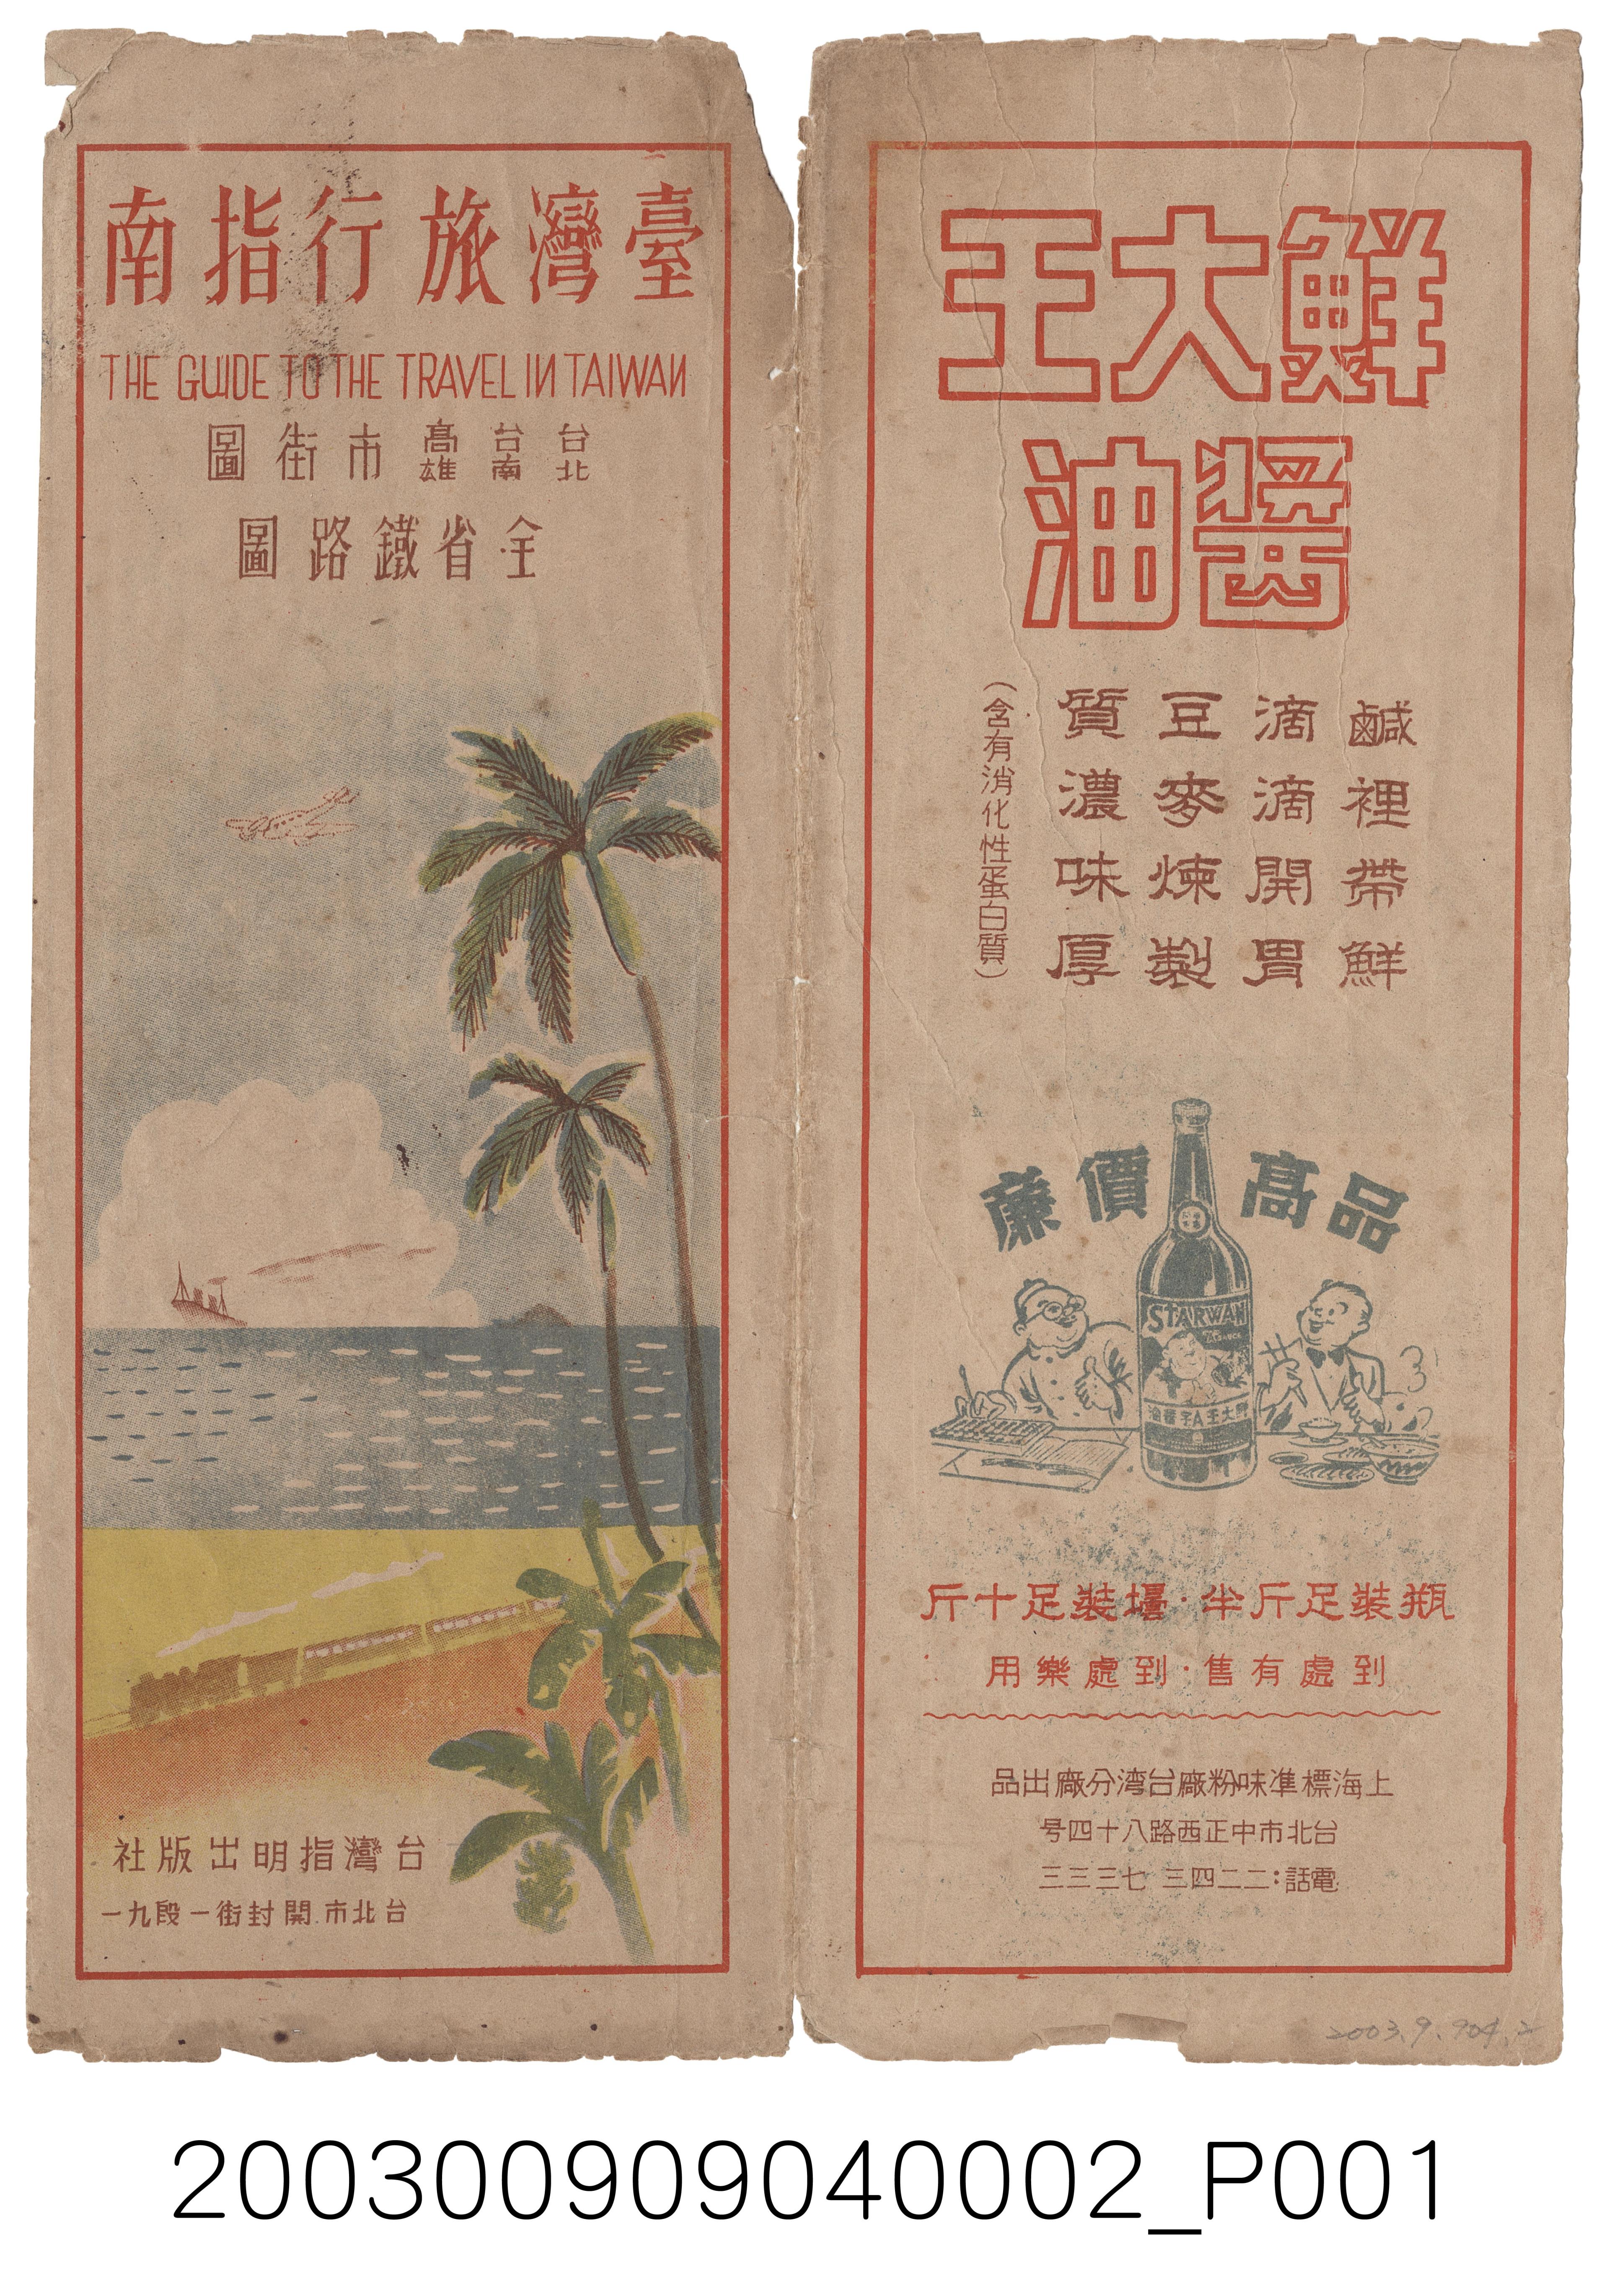 指明出版社〈臺灣旅行指南〉封套 (共2張)